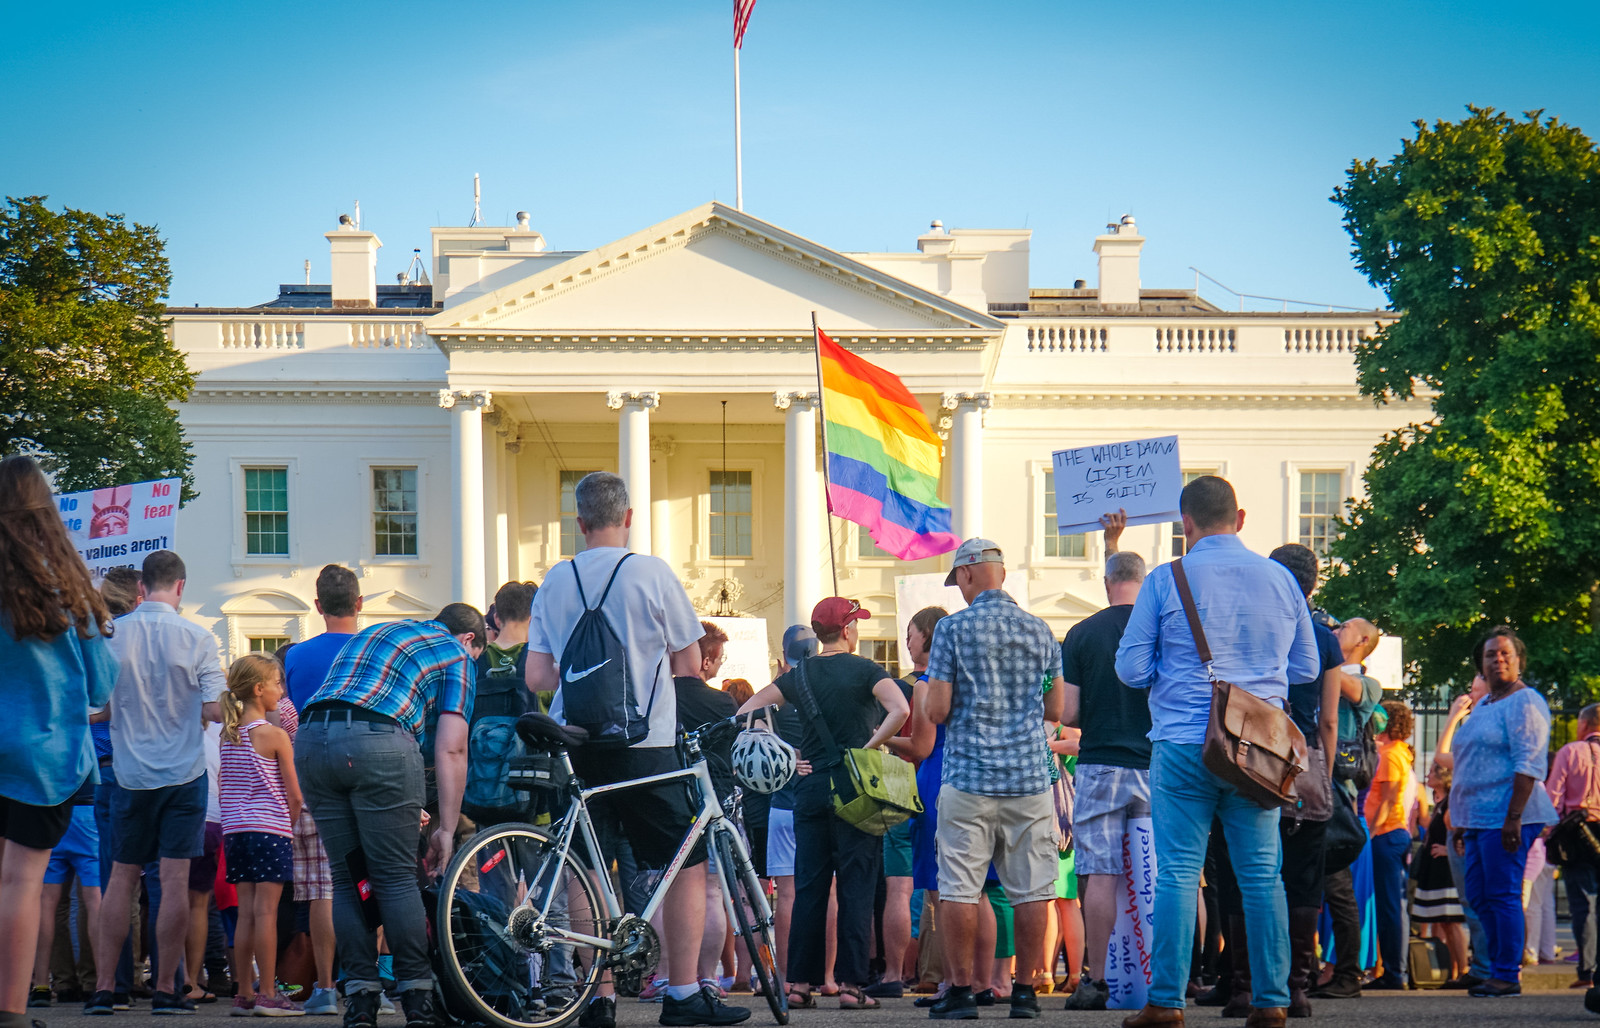 2017.07.26 Protest Trans Military Ban, White House, Washington DC USA 7640